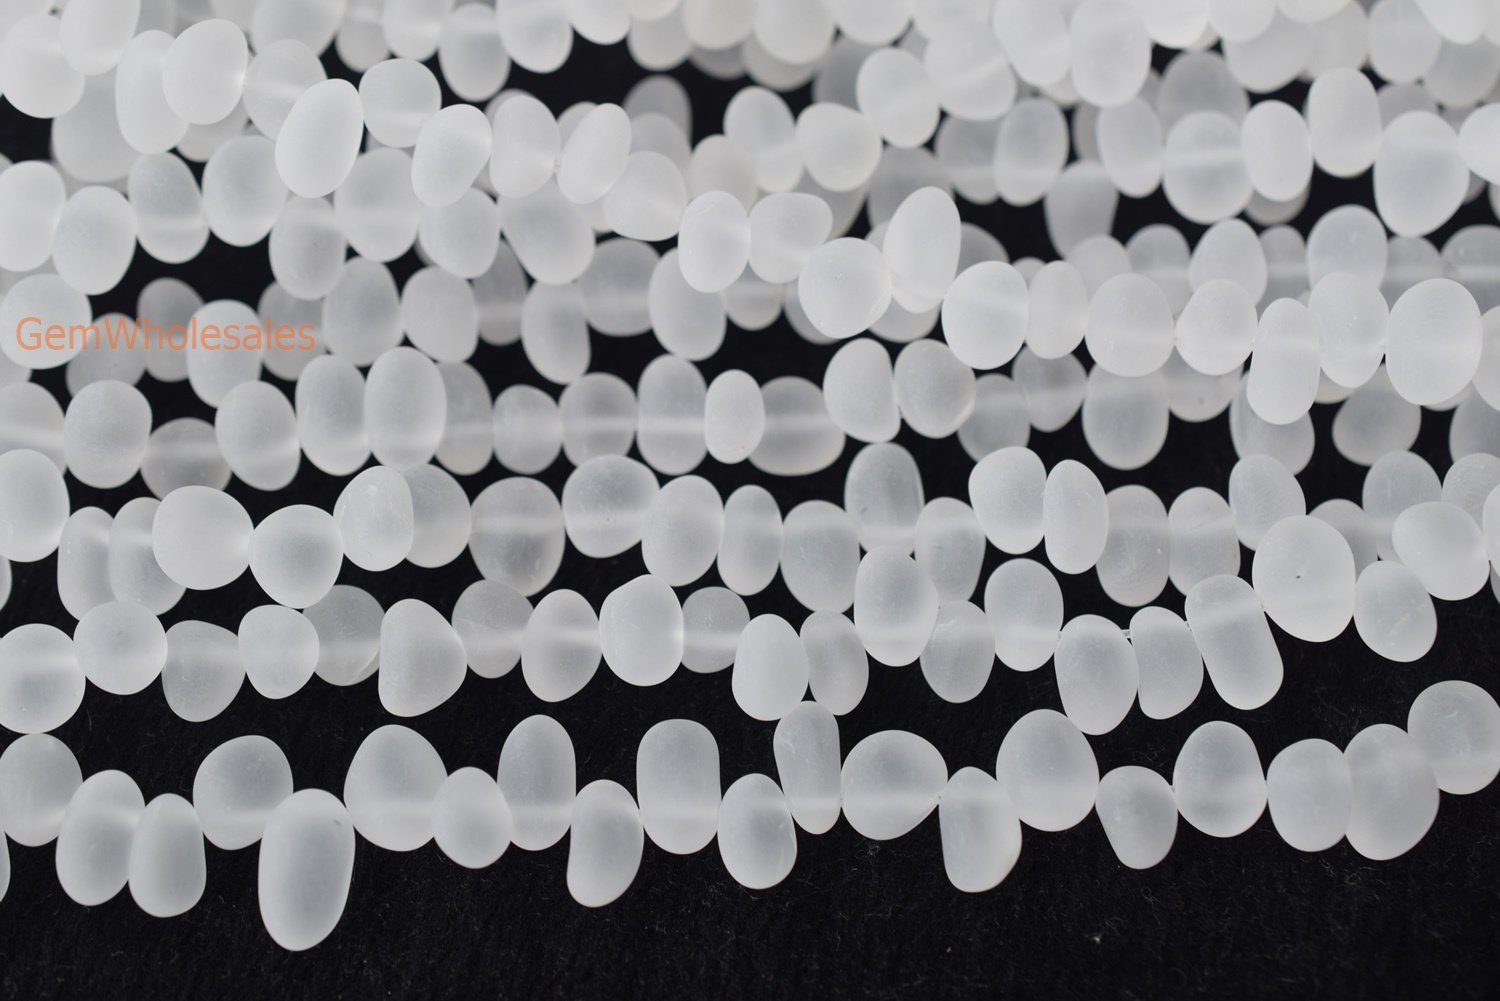 Clear quartz - Pebble- beads supplier